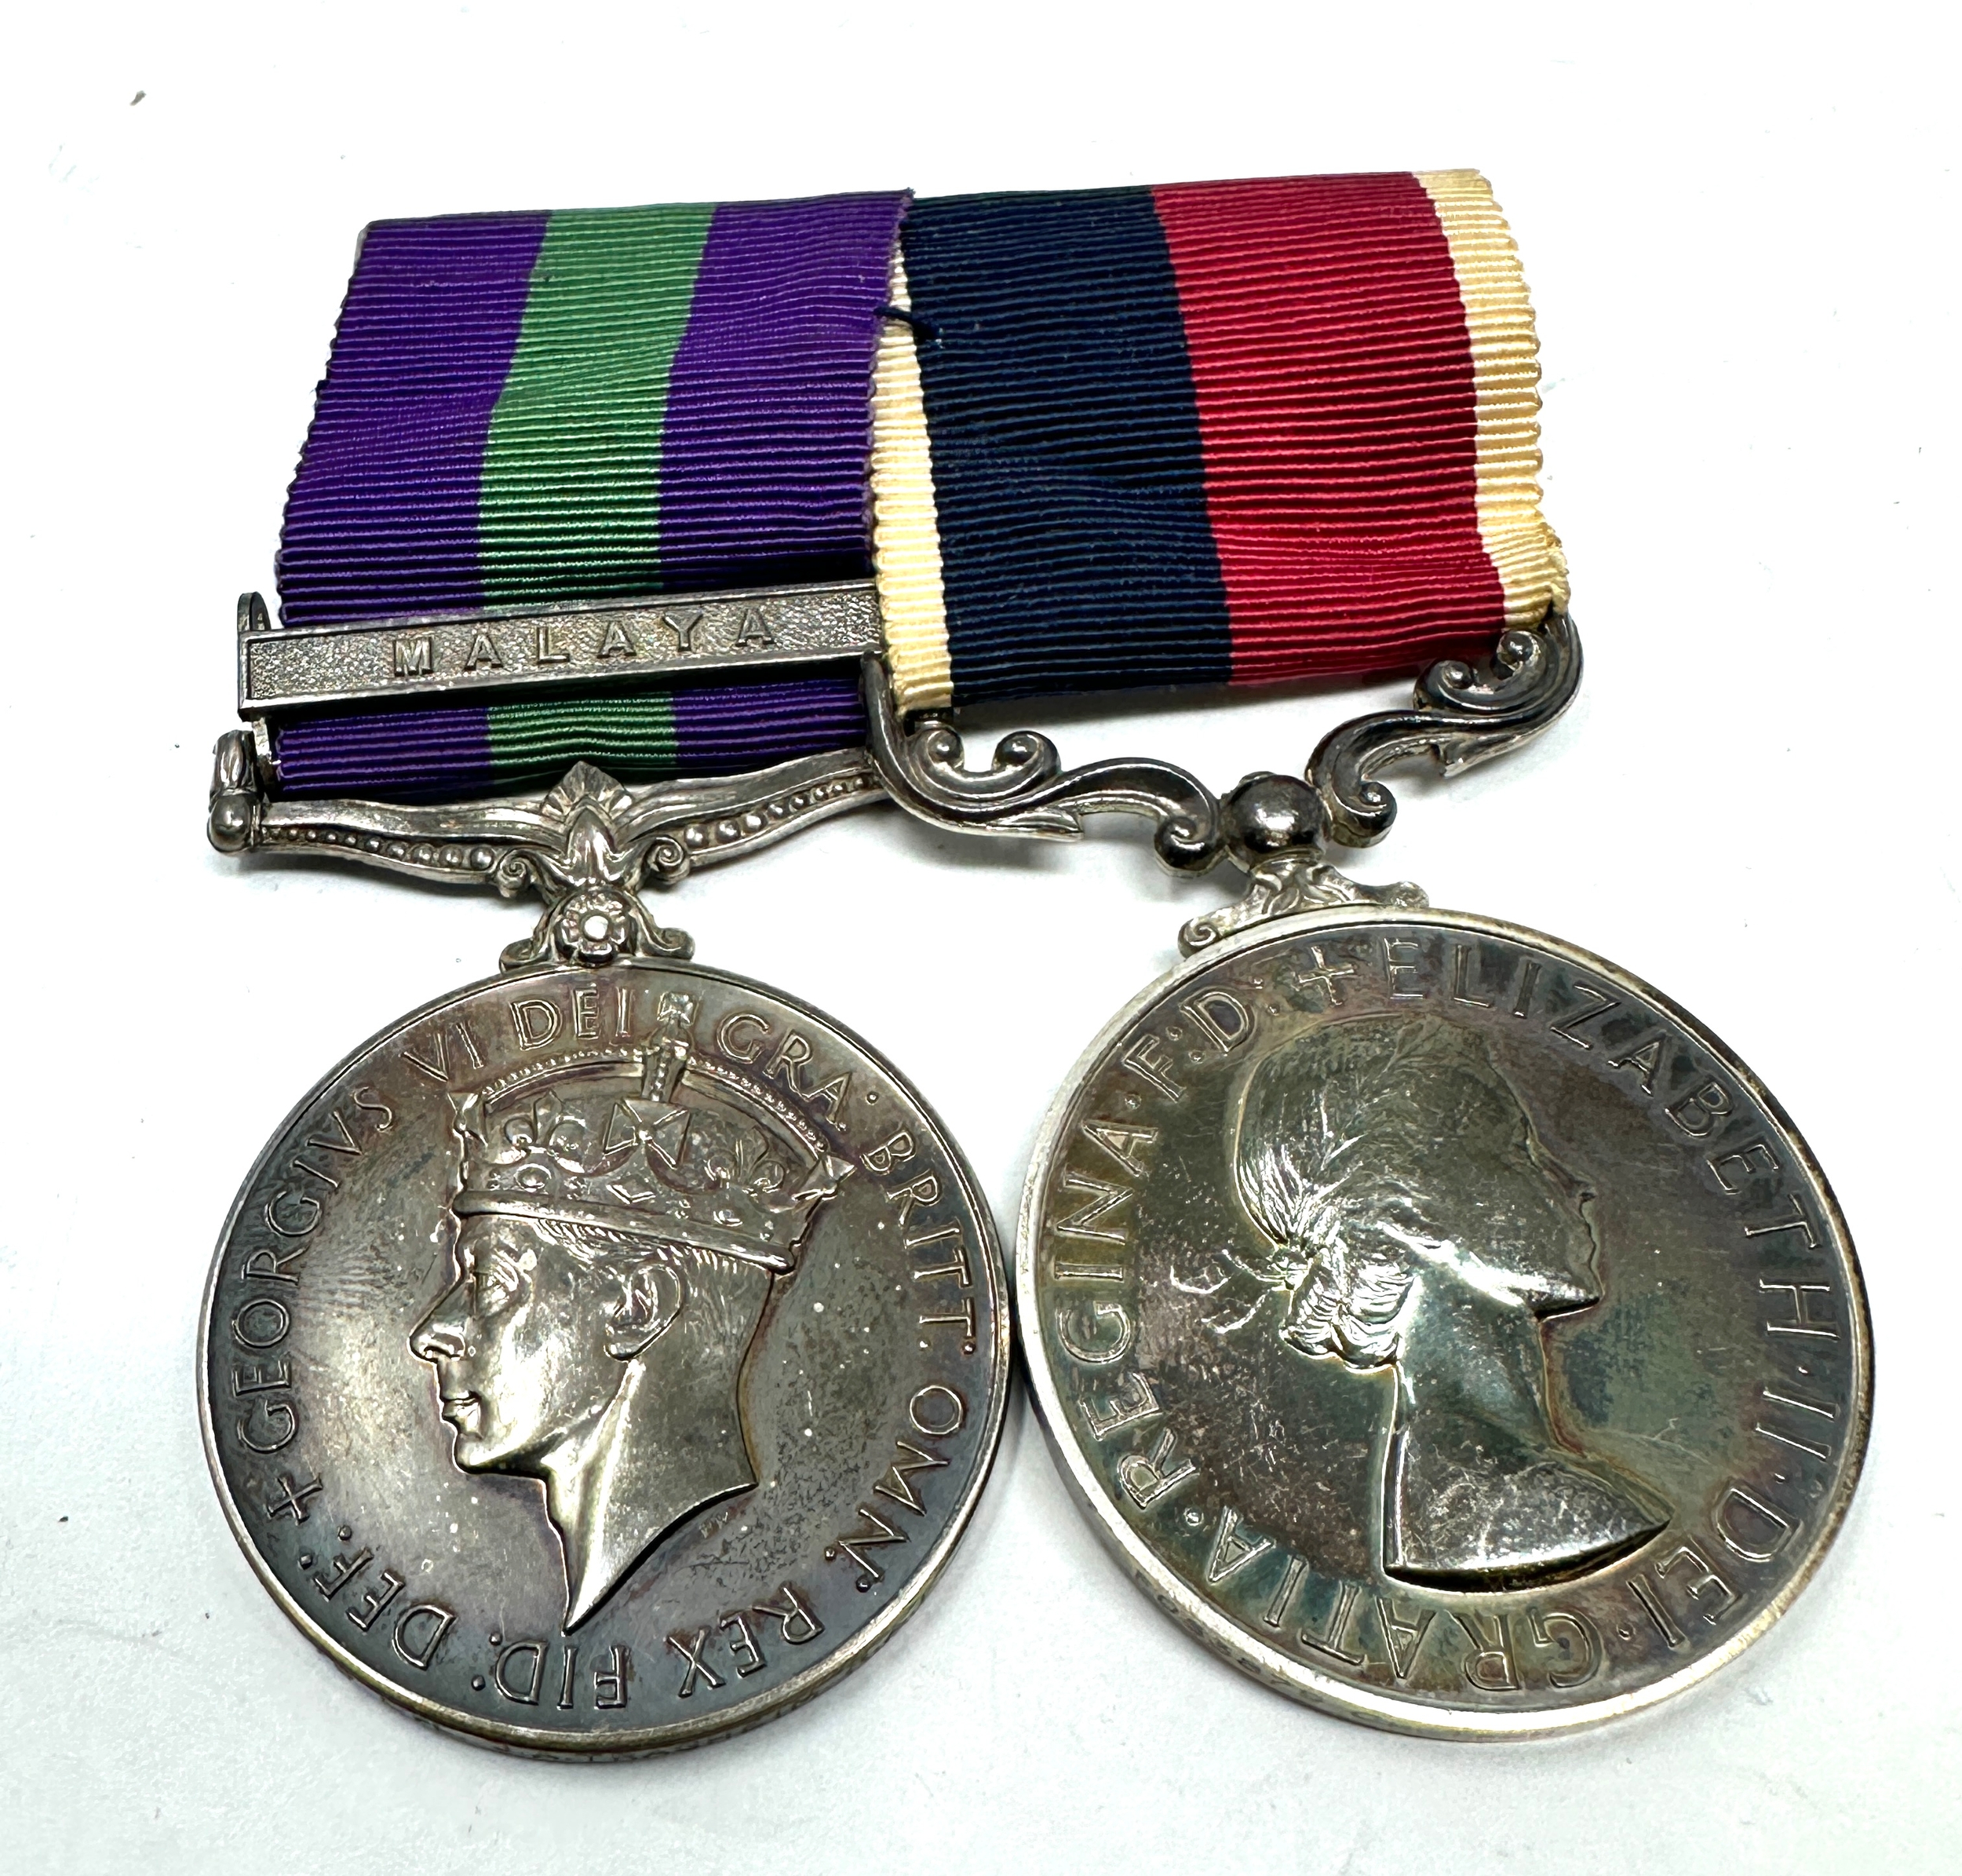 G.S.M Malaya & long service medal pair to cpl j.a traghheim R.A.F